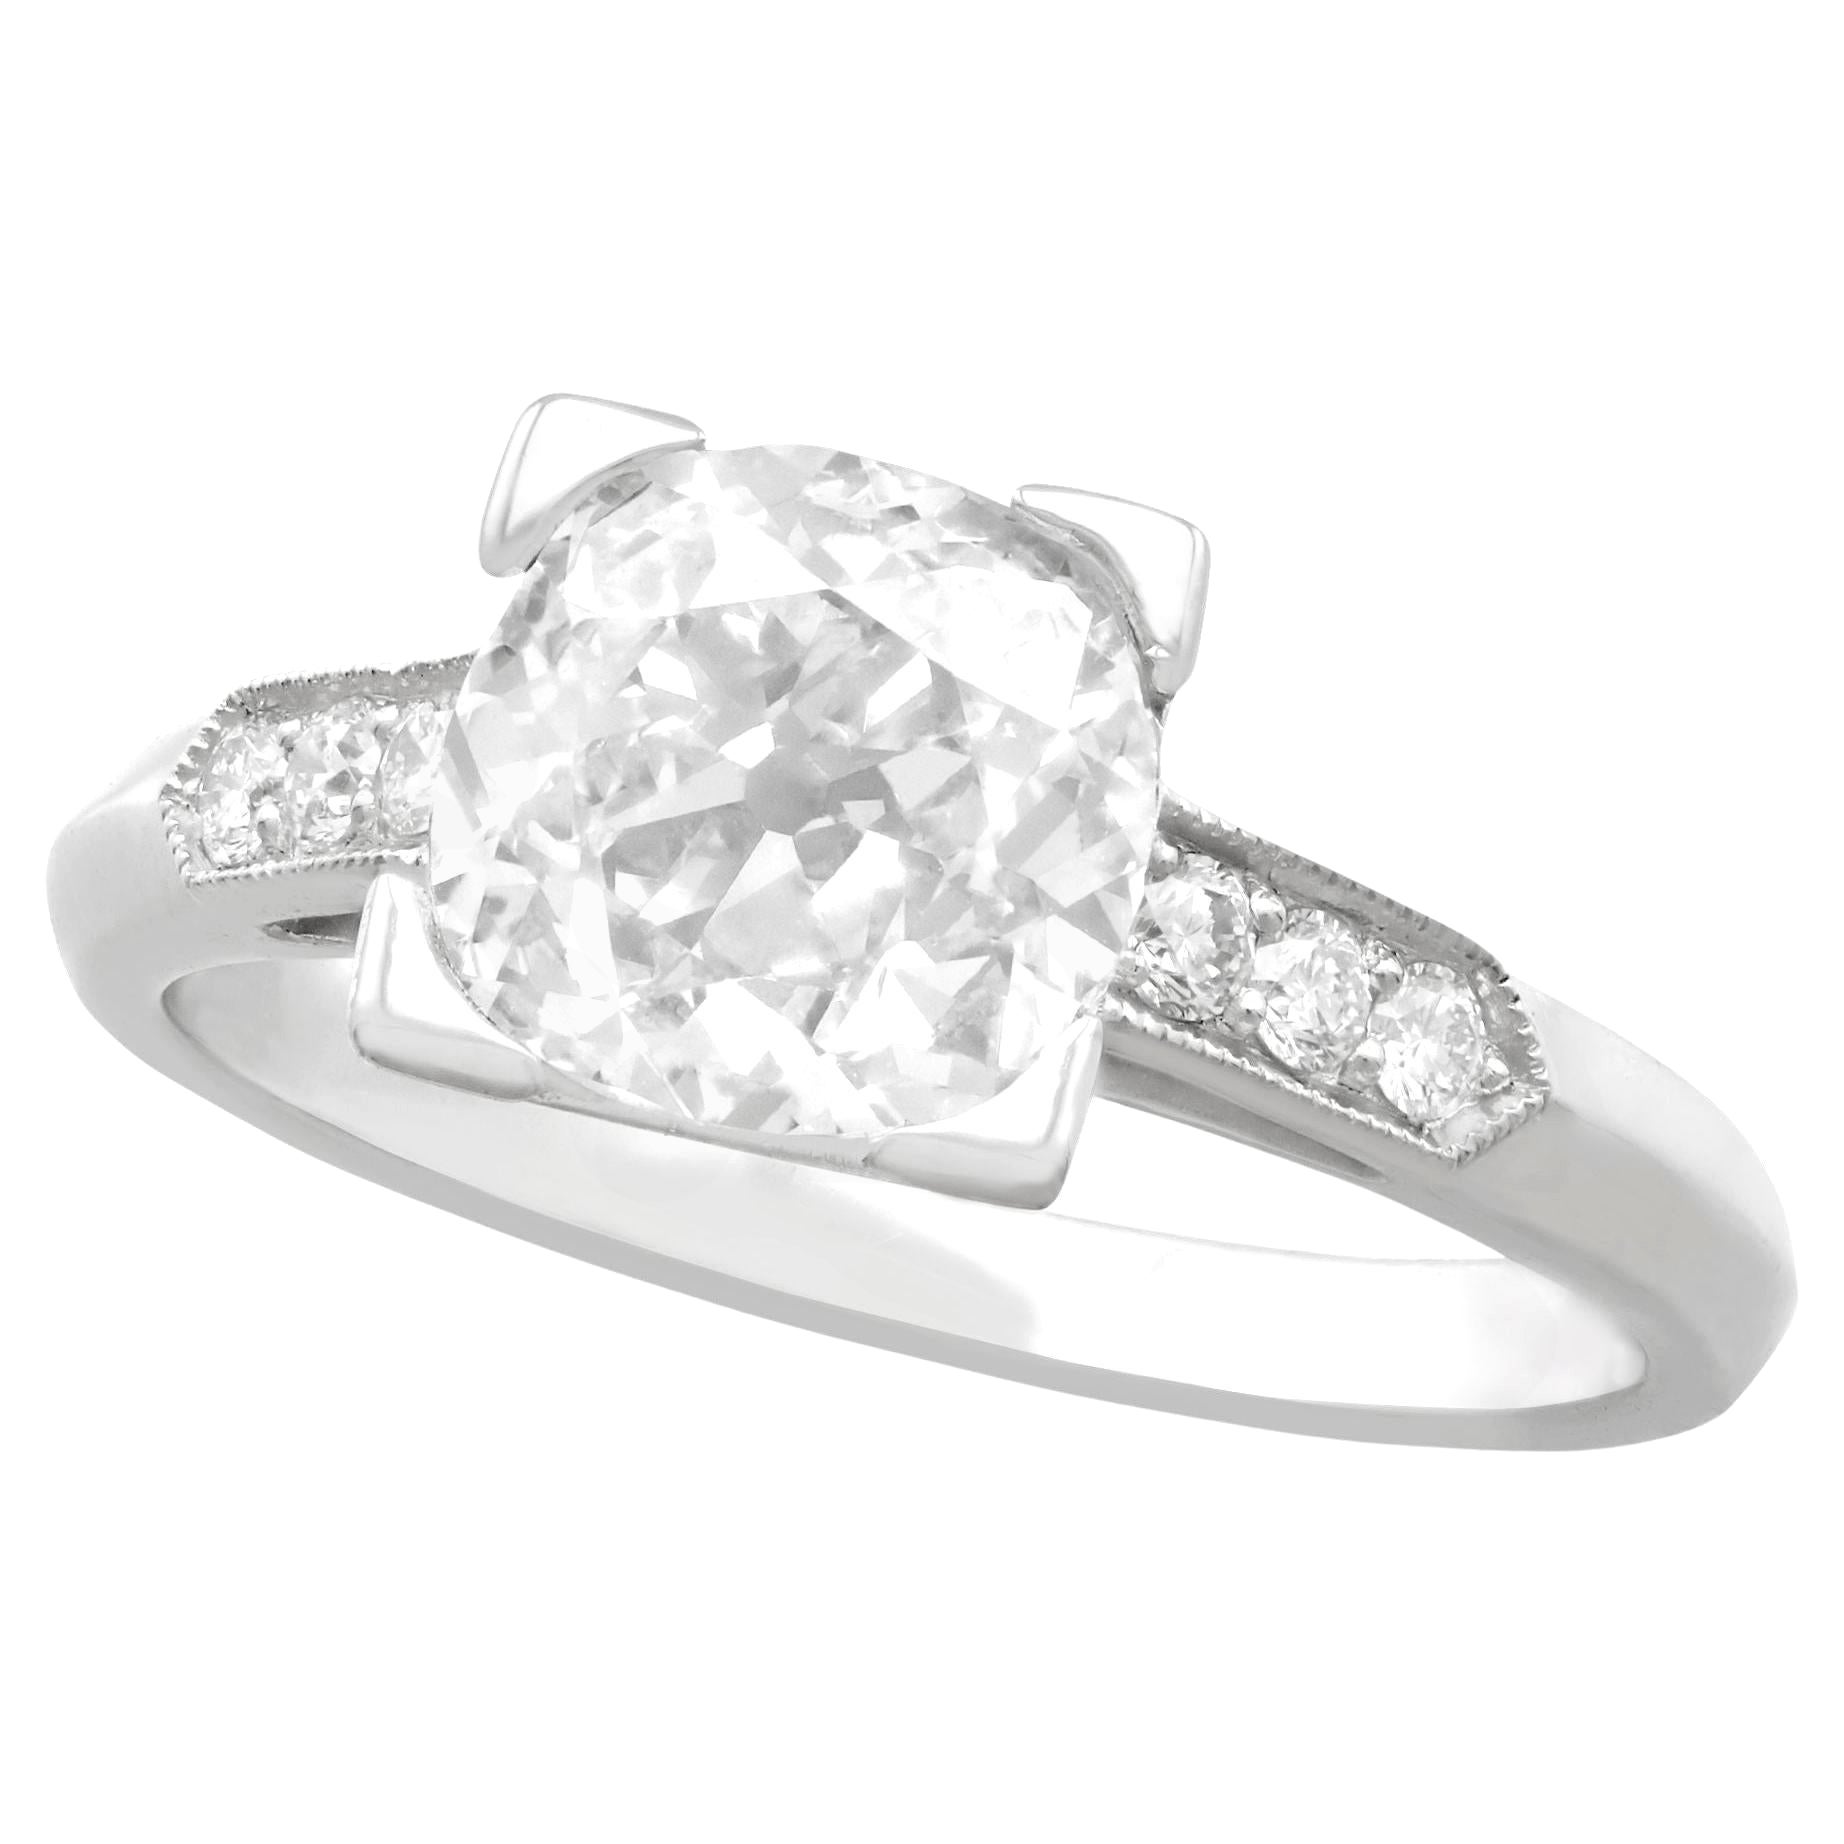 1.74 Carat Diamond and Platinum Solitaire Engagement Ring